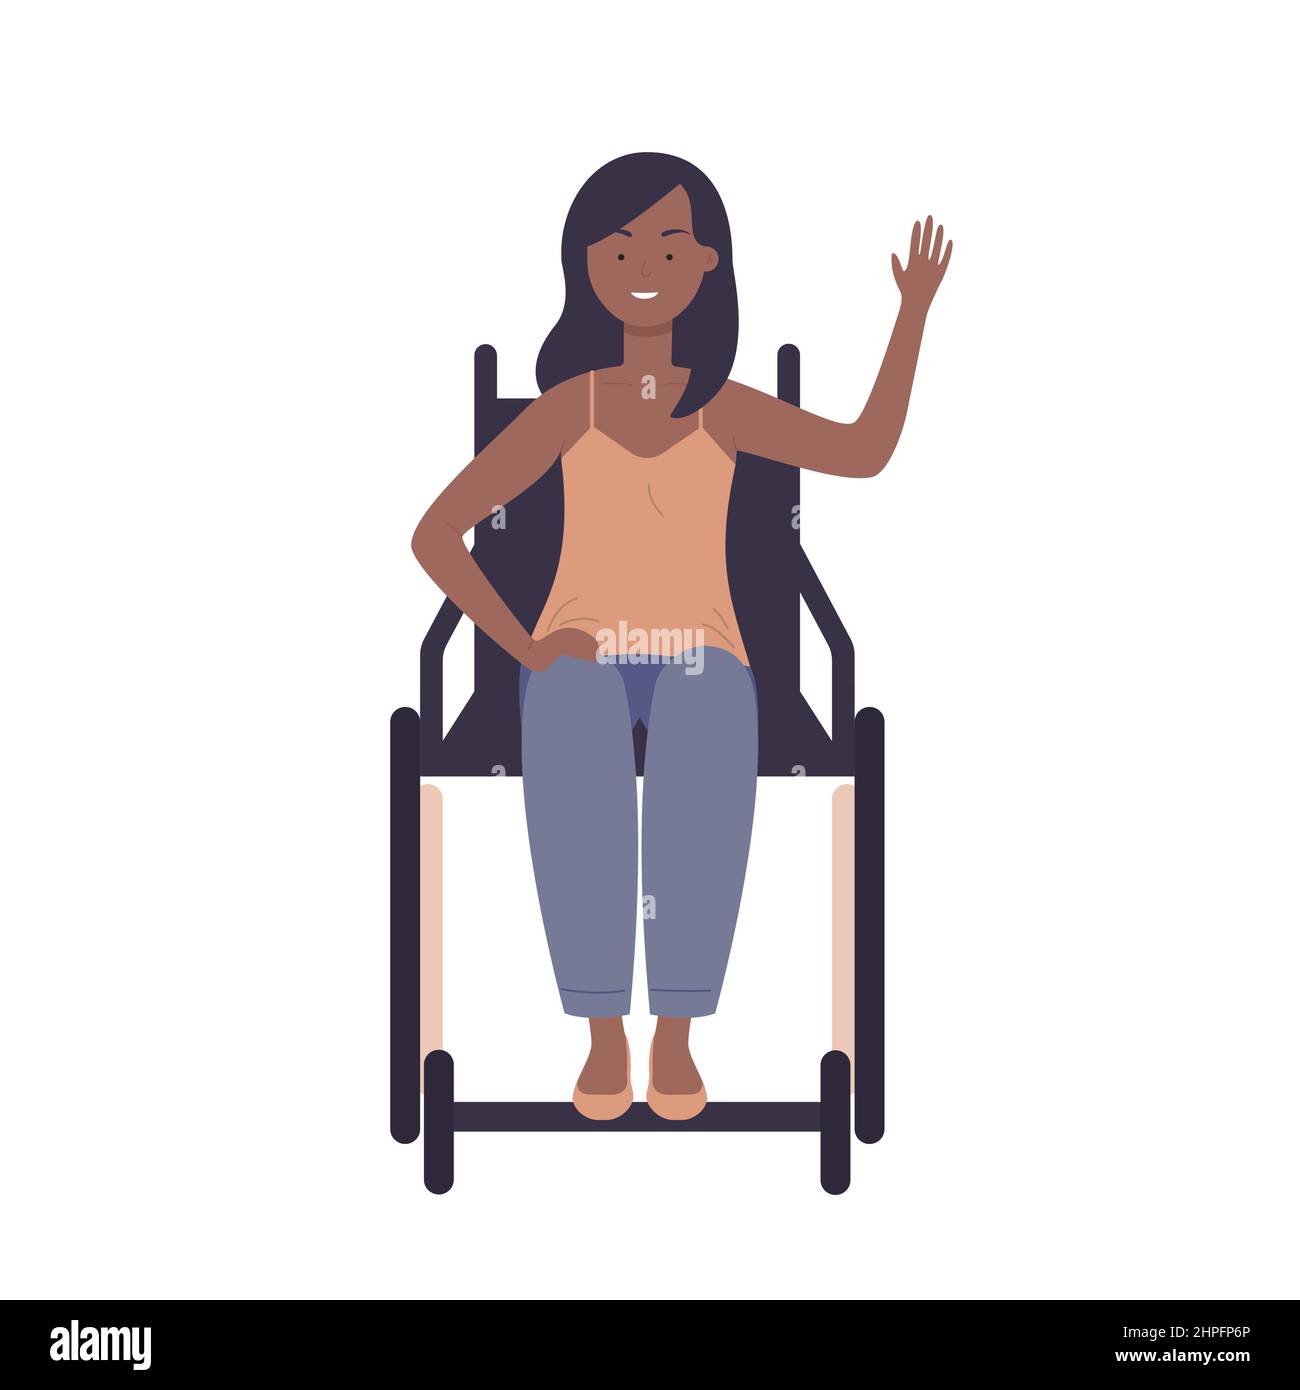 Fille noire handicapée en fauteuil roulant, saluant. Dame avec un handicap de mobilité en signe de bonjour illustration vectorielle de dessin animé Illustration de Vecteur